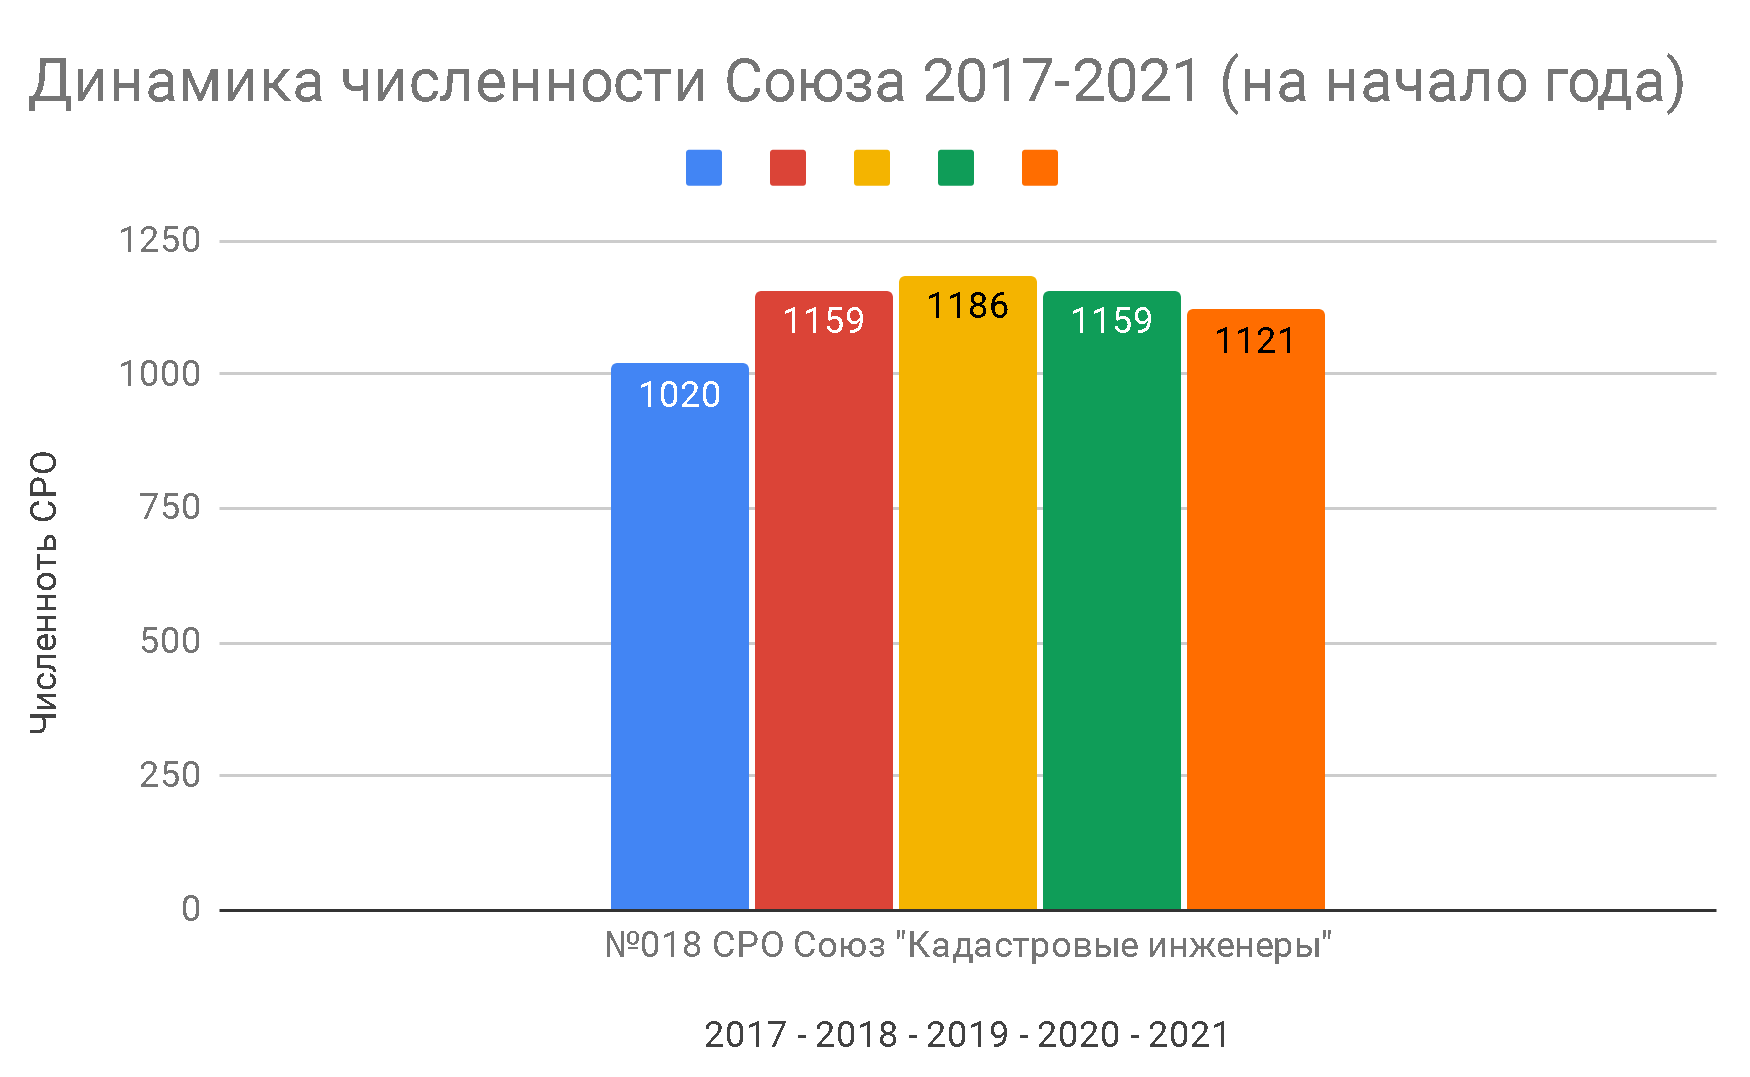 Динамика численности СРО Союз Кадастровые инженеры 2017-2020